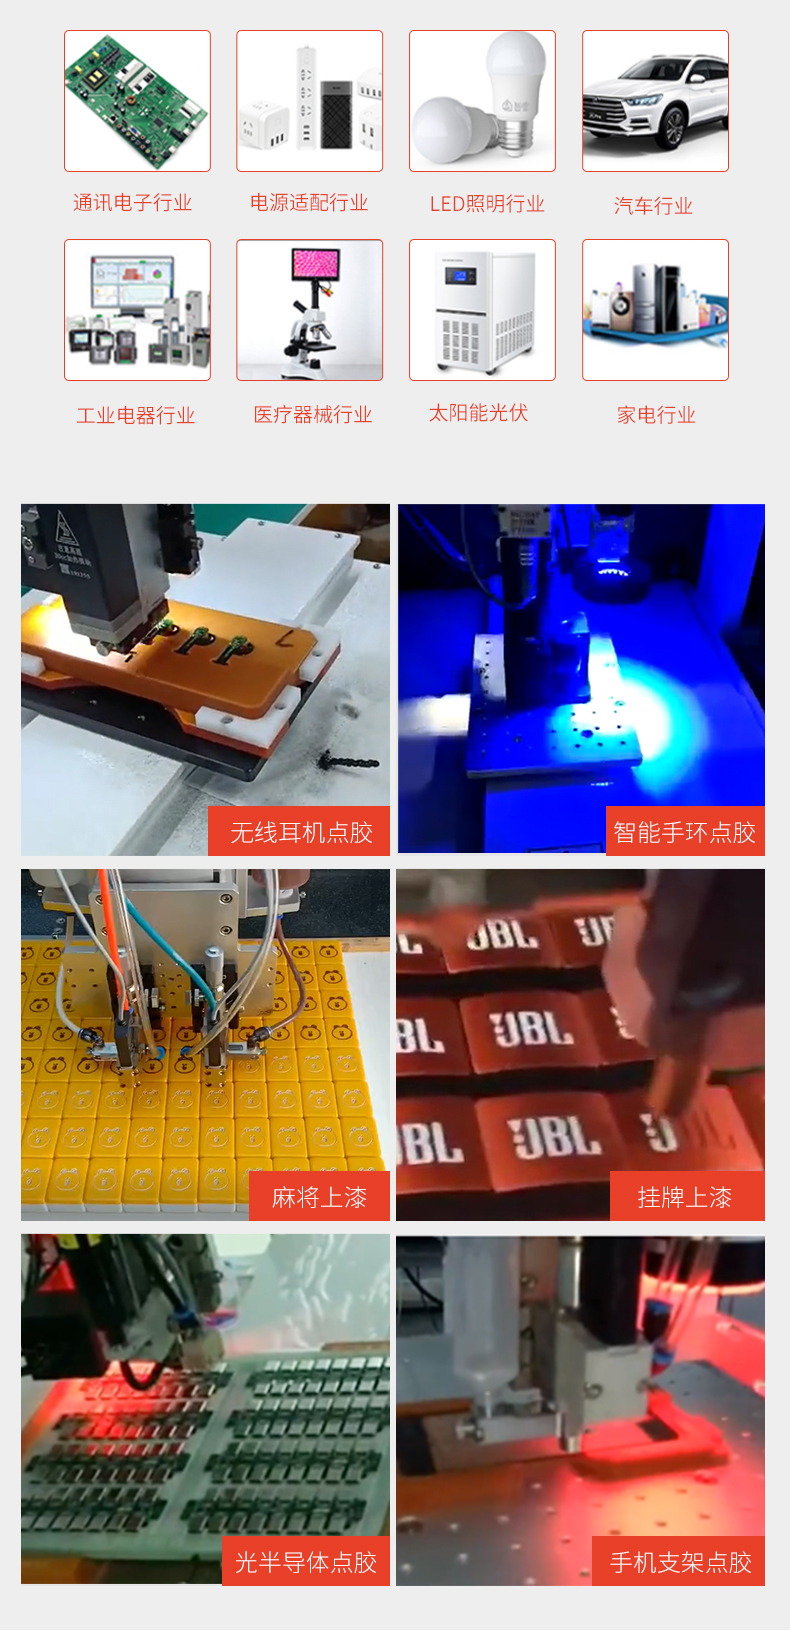 桌面式视觉喷射点胶机-鸿展自动化-自动视觉点胶机|灌胶机|螺丝机|焊锡机|自动化设备批发